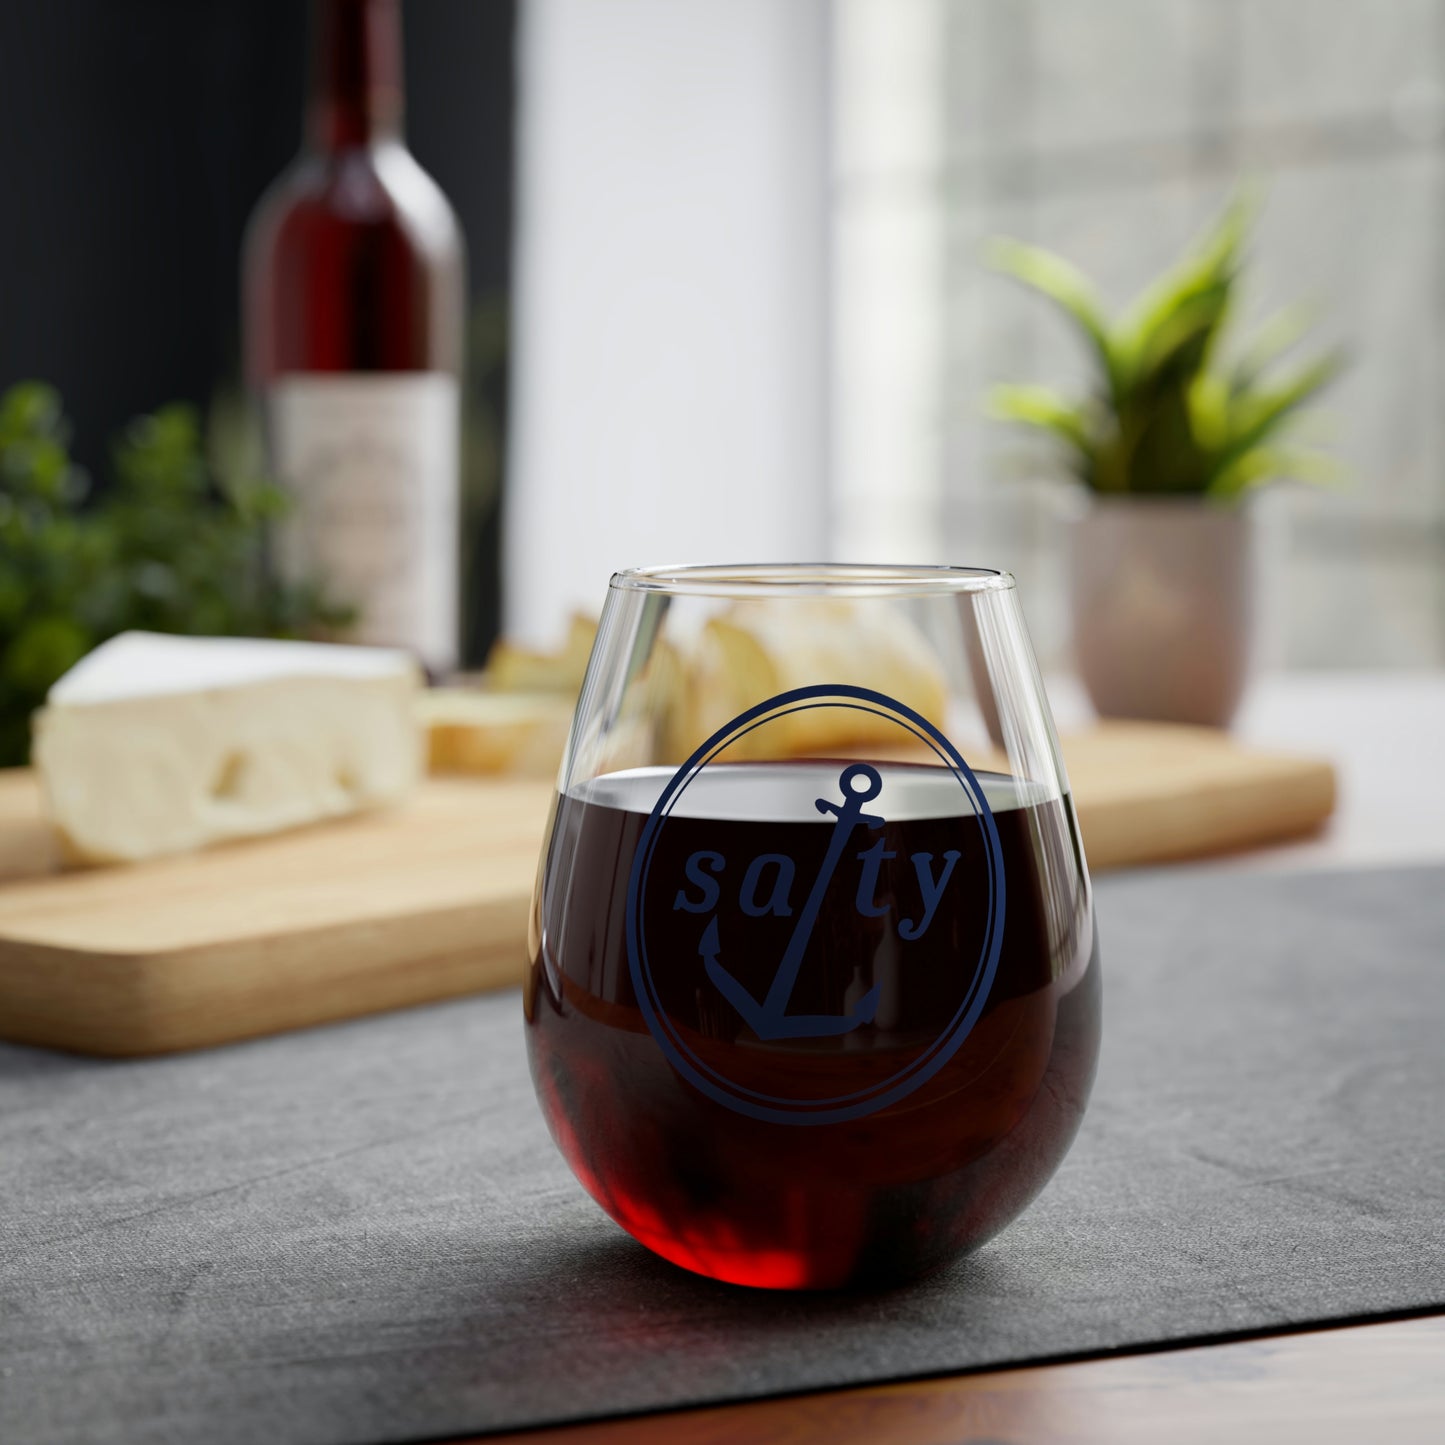 Salty™ Stemless Wine Glass, 11.75oz